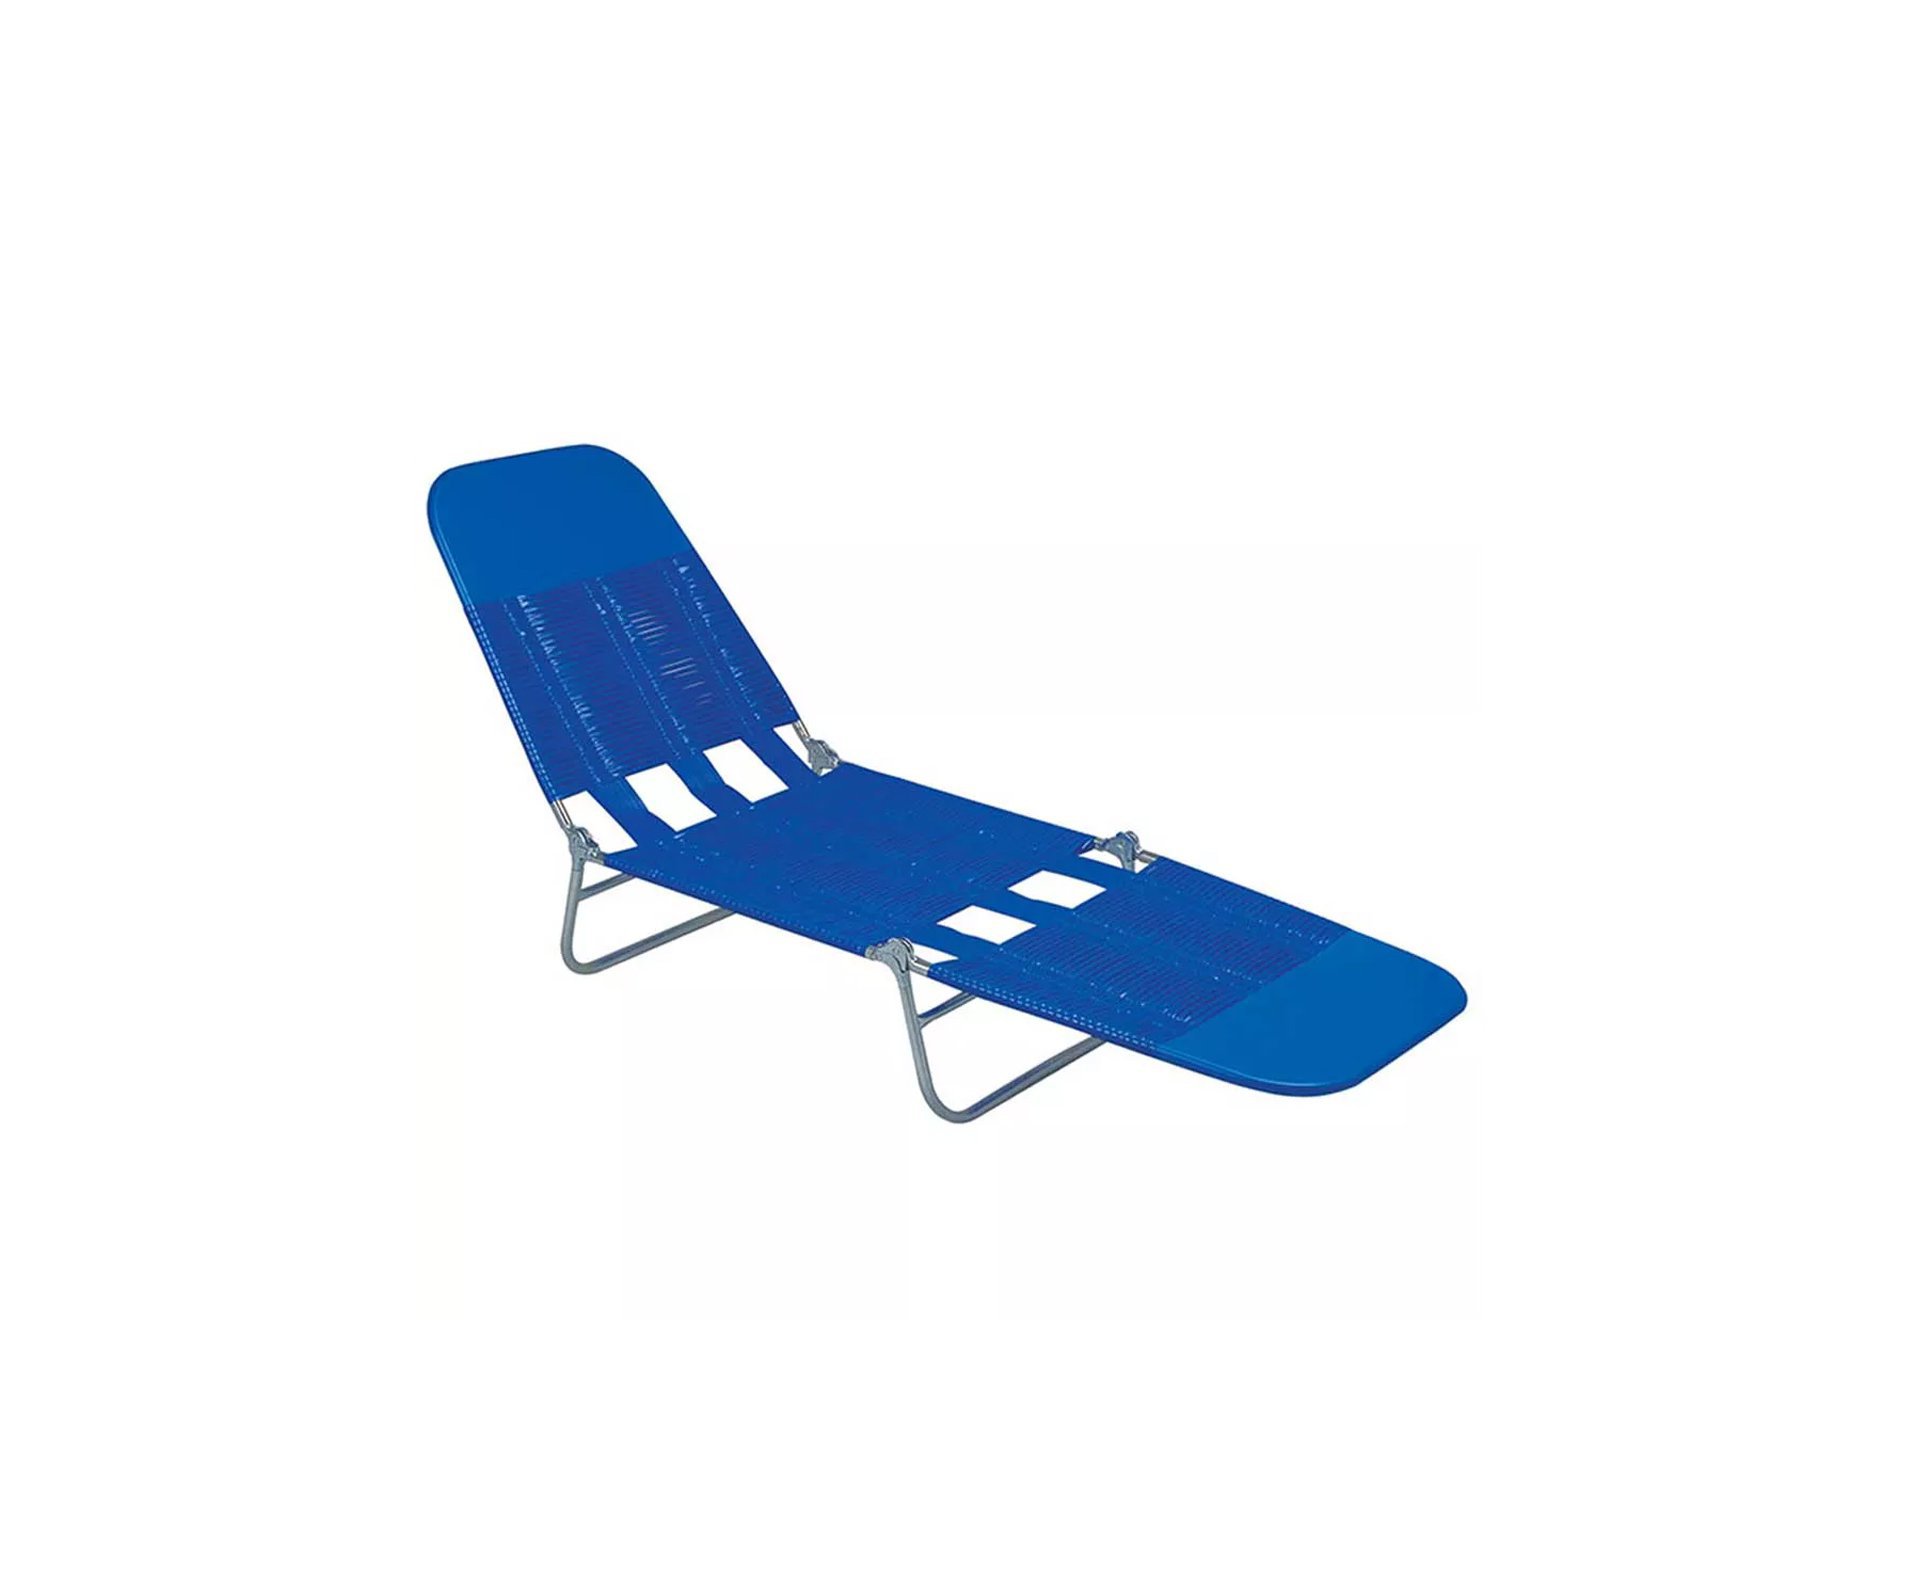 Cadeira Espreguiçadeira Pvc Azul - Mor